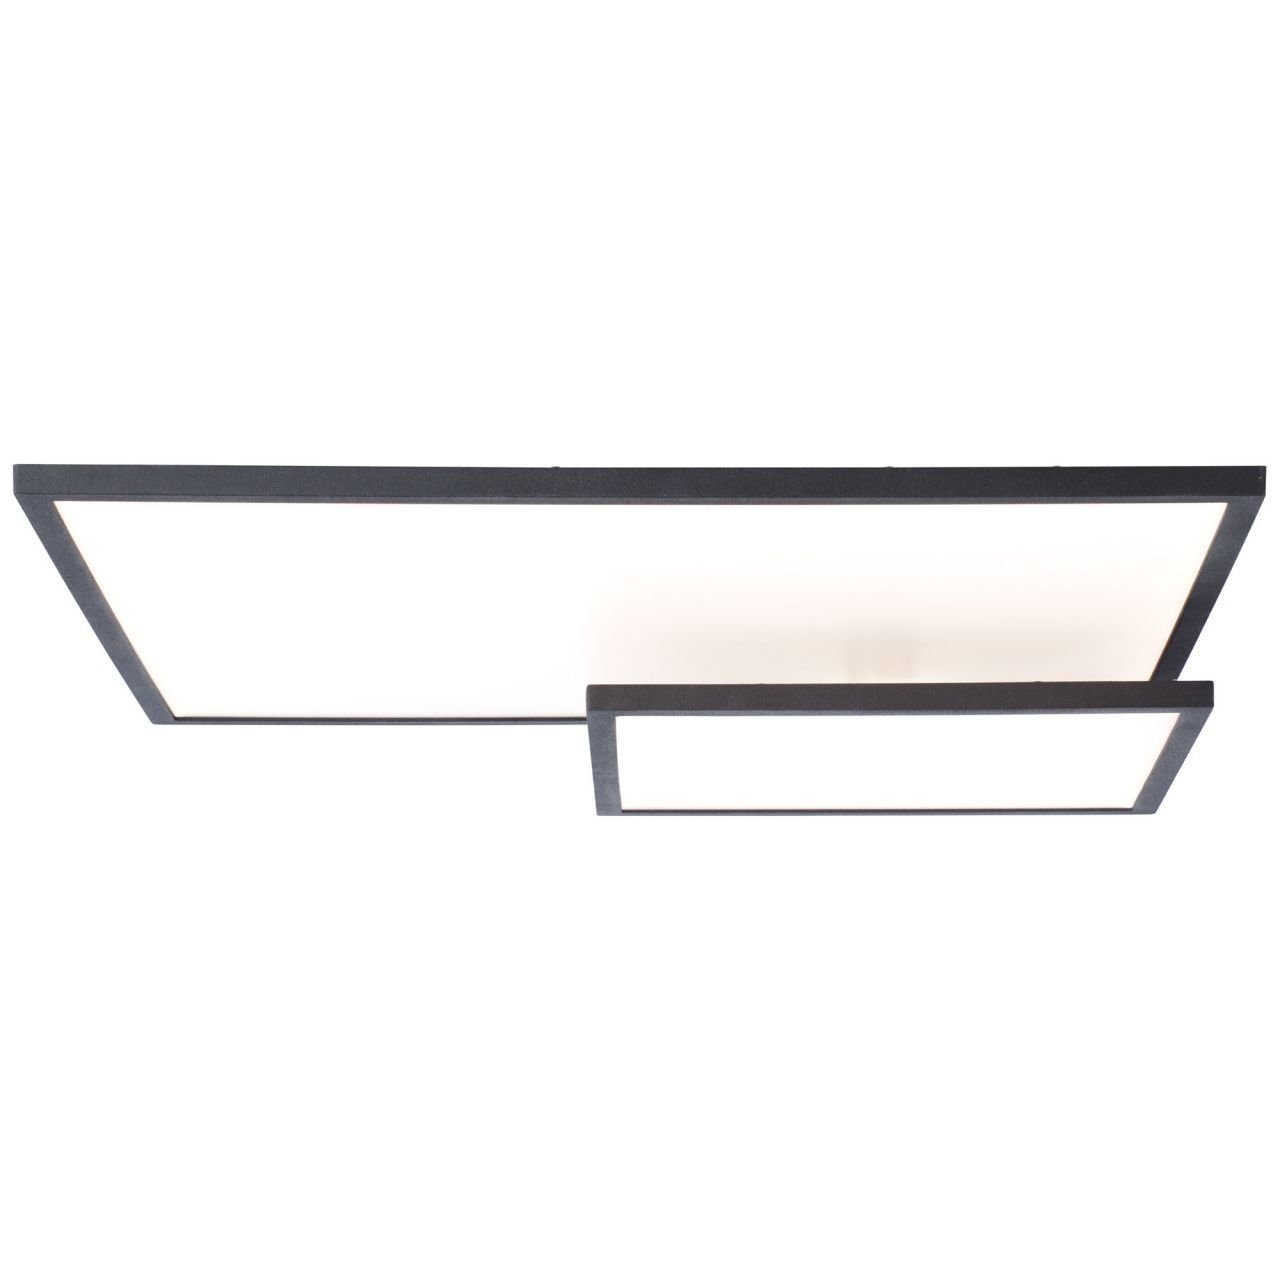 Lampe 62x47cm Bility Deckenaufbau-Paneel easyDim LED 1x schwarz/weiß Aufbauleuchte Bility, 3000K, Brilliant